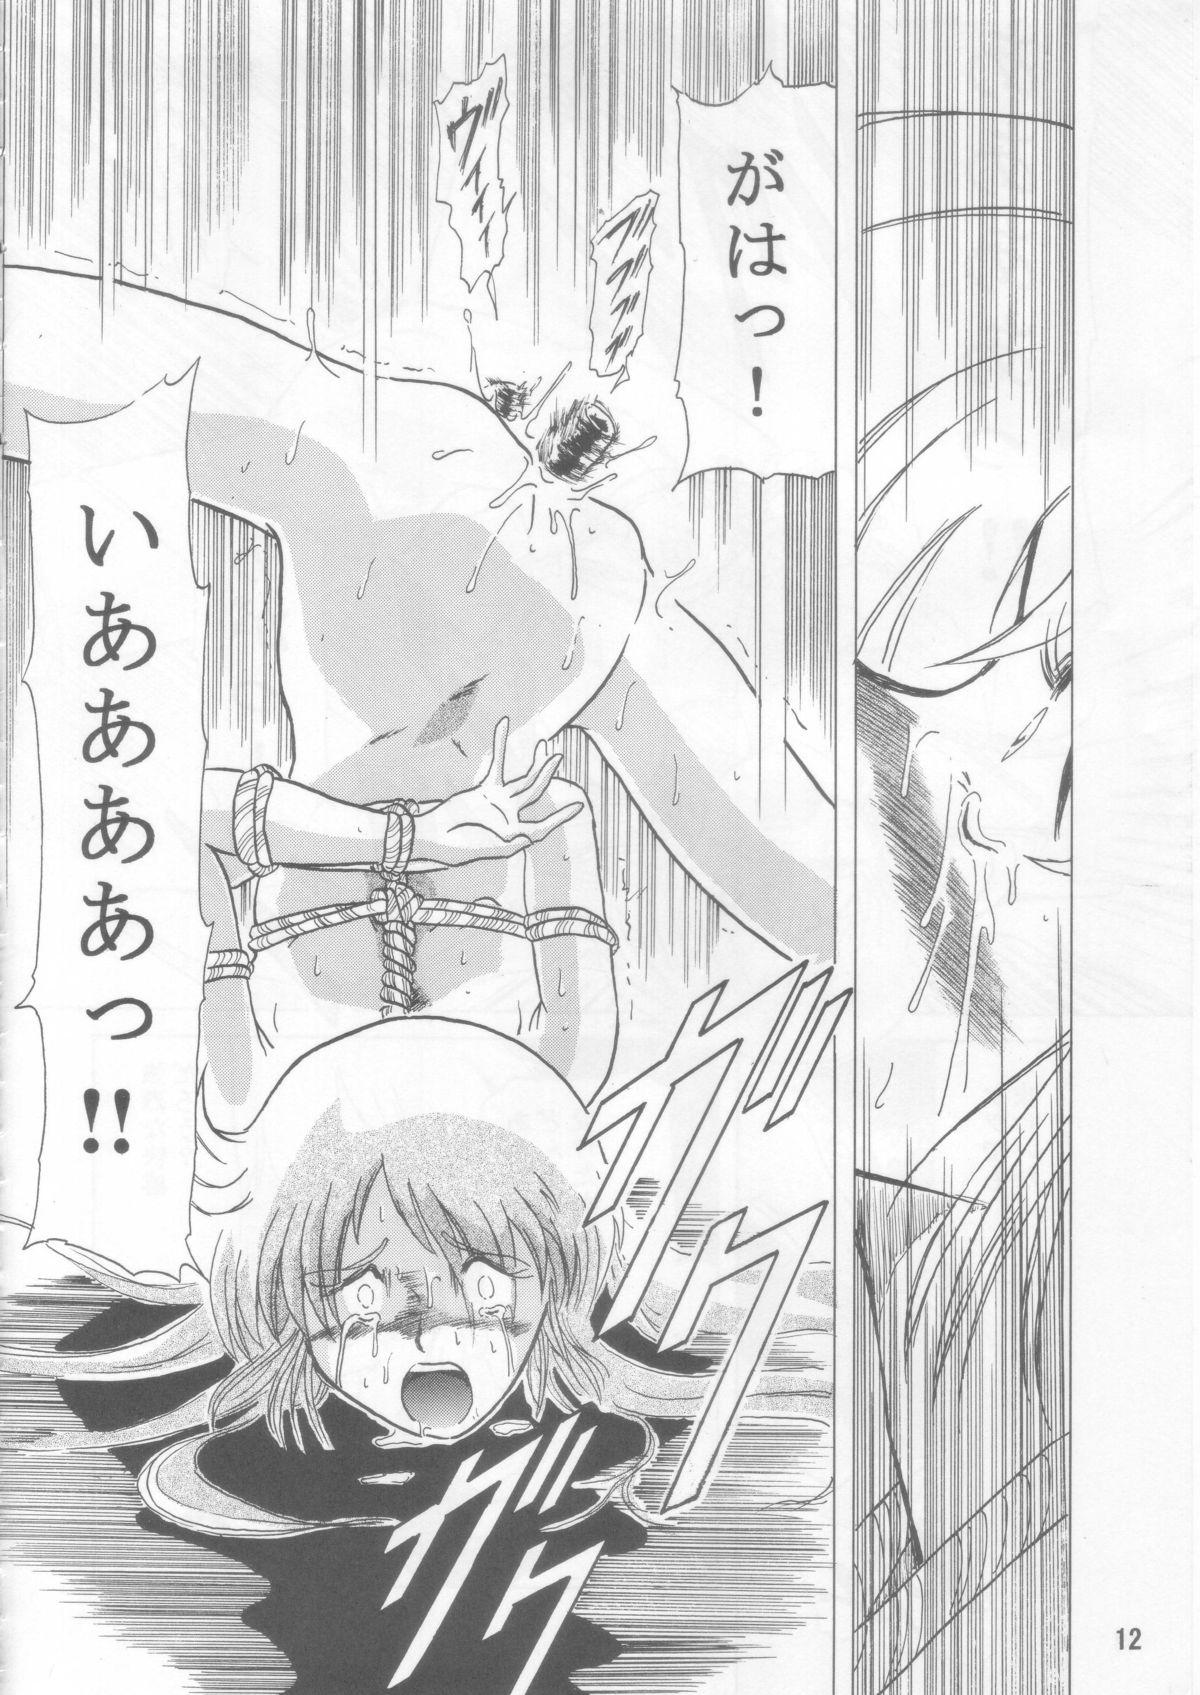 Mas Ceila sama Jiyuujizai 3 - Aura battler dunbine Romance - Page 11